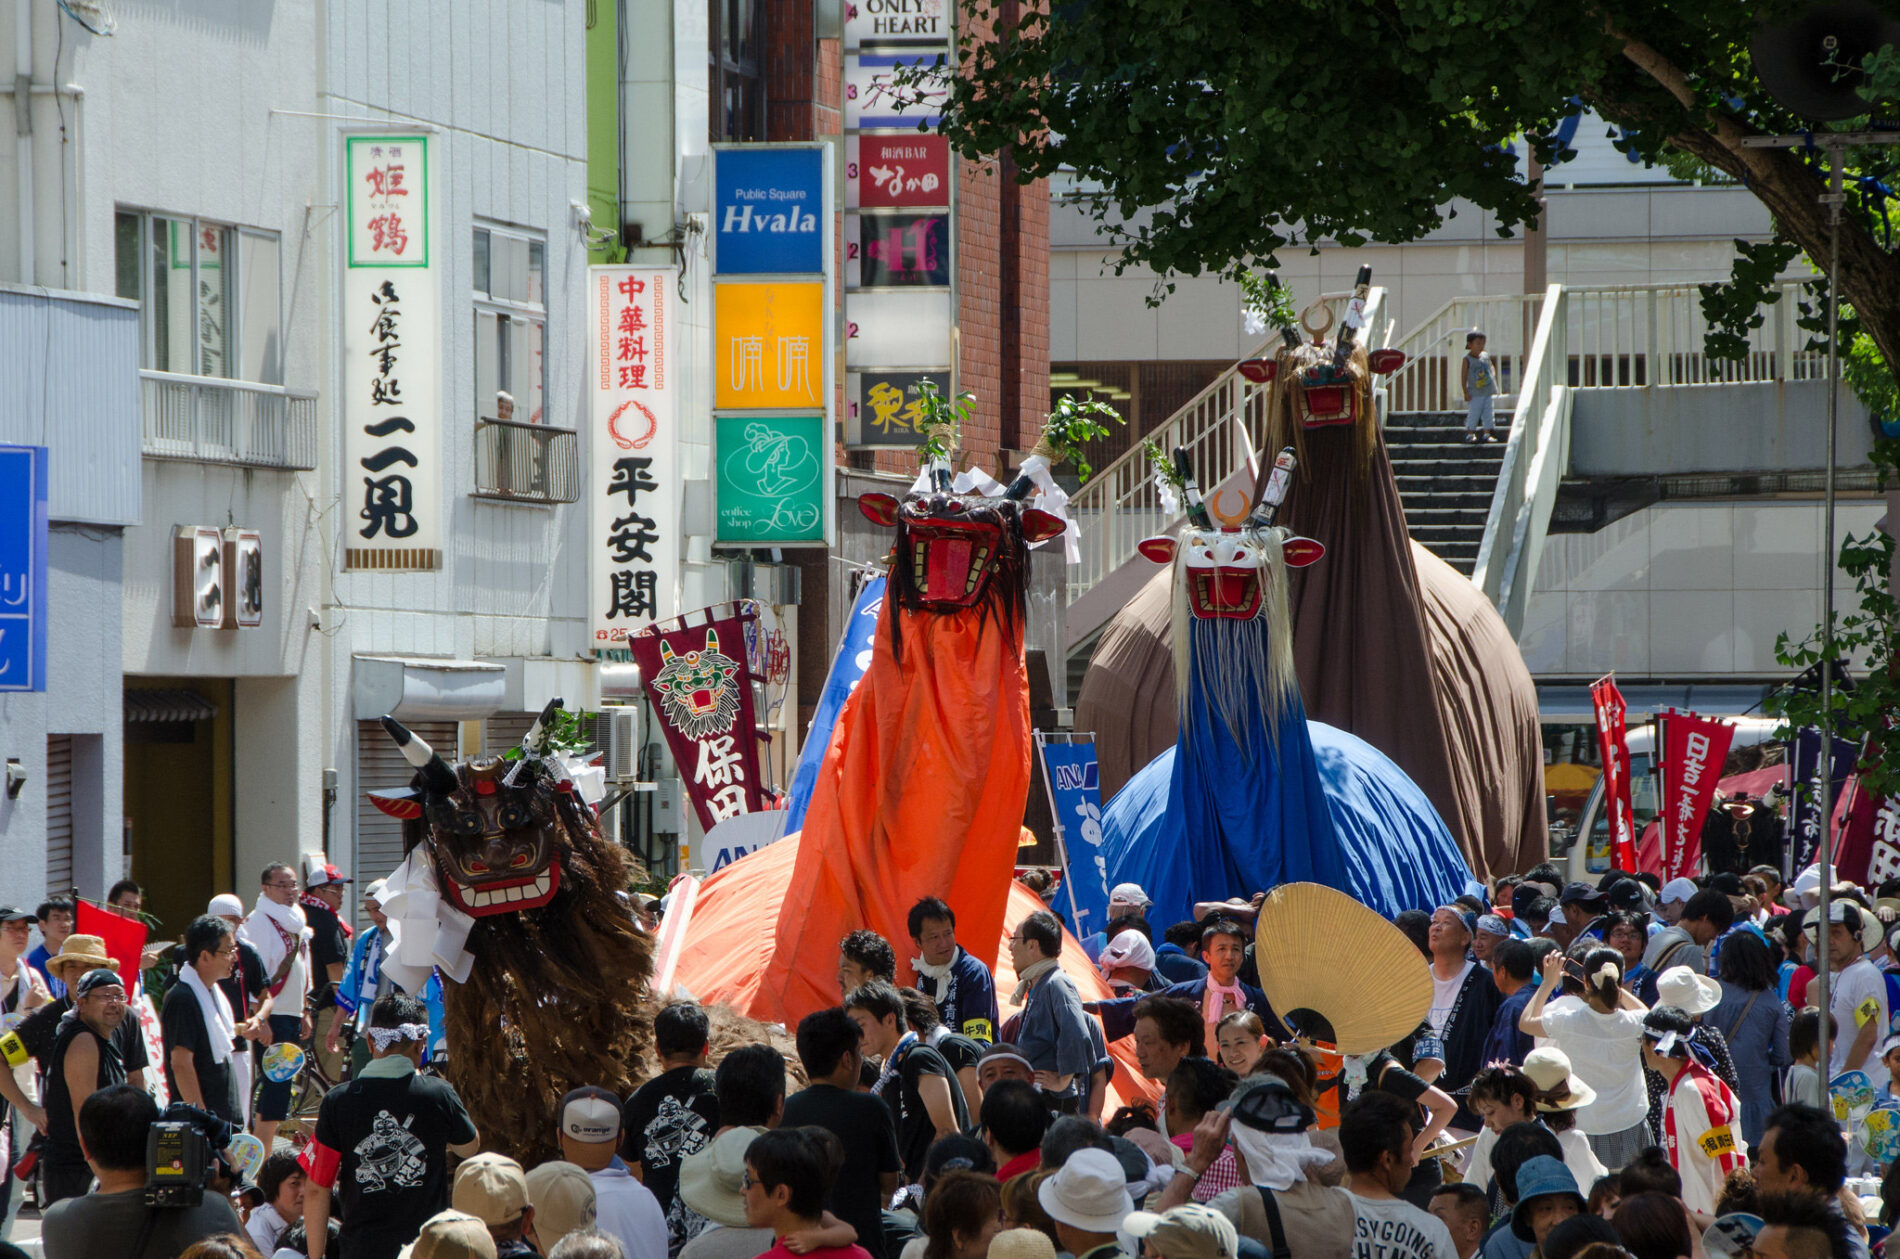 Beim Ushi-Oni-Matsuri zeihen seltsame Ochsendämonen durch die Stadt. (Foto: cotaro70s auf Flickr https://flic.kr/p/fgKPJe CC BY-ND 2.0 https://creativecommons.org/licenses/by-nd/2.0/)